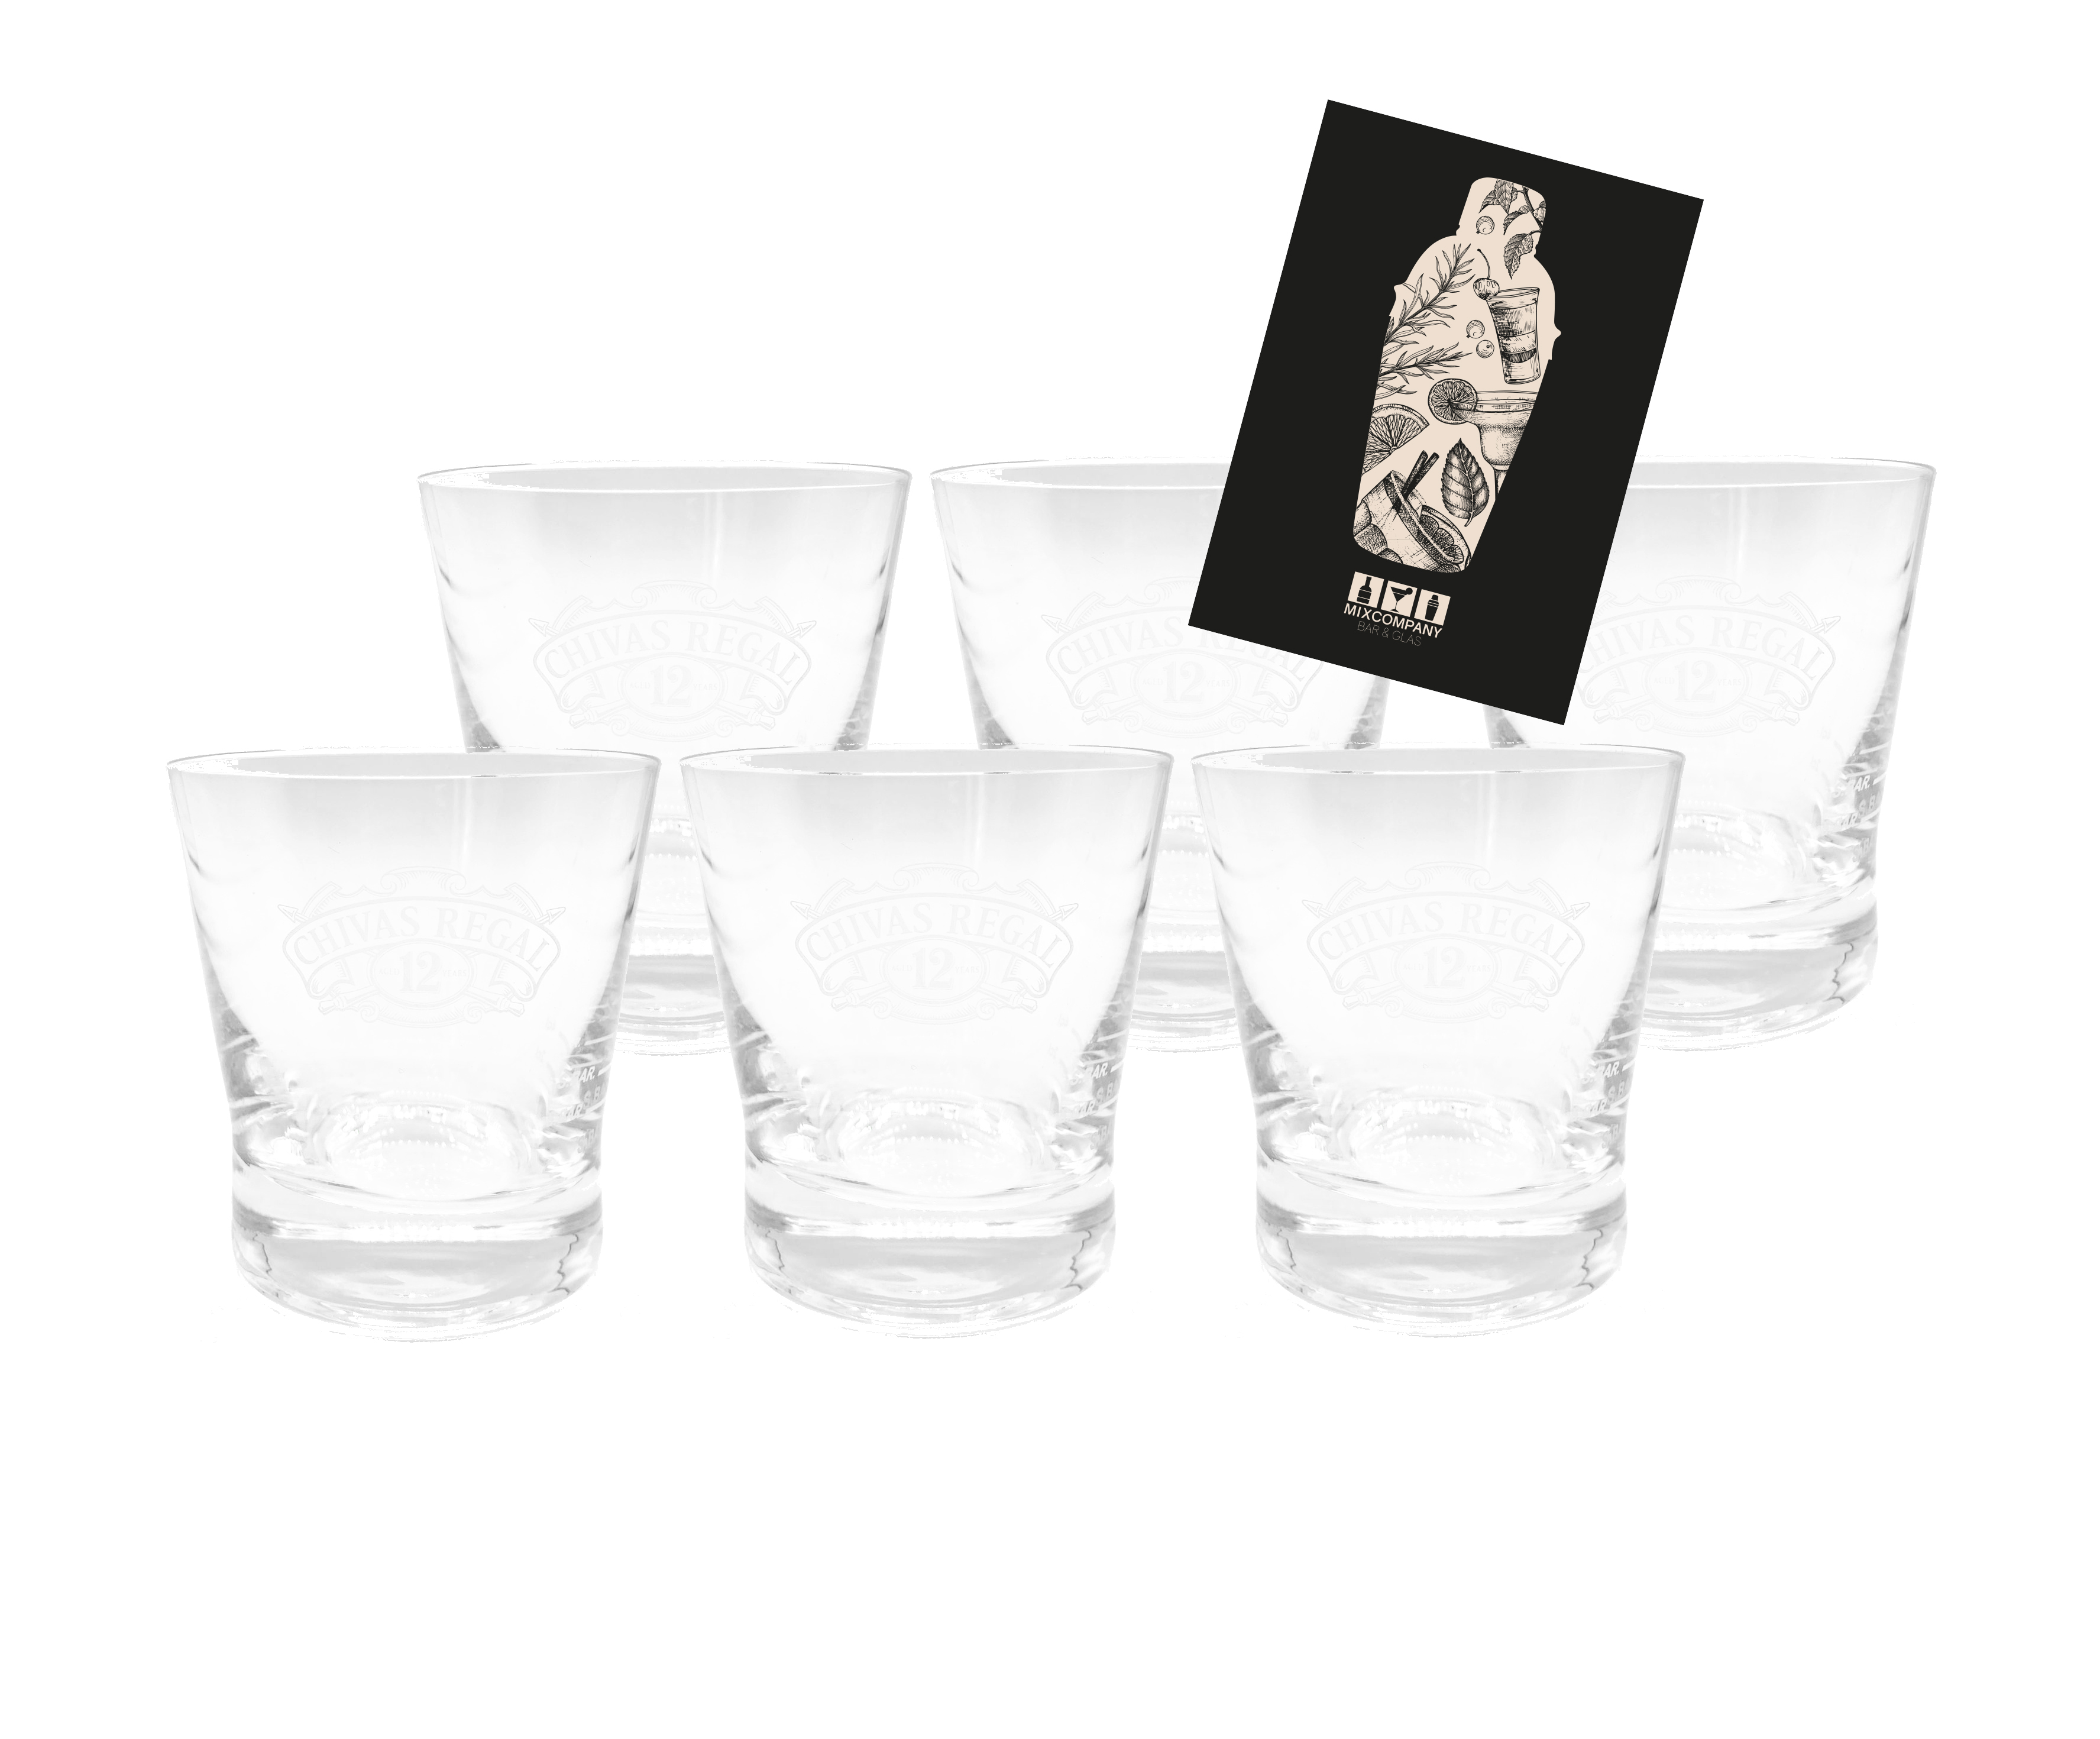 Chivas Regal Whiskey Glas Gläser Tumbler Set - 6x Gläser geeicht 2cl/4cl